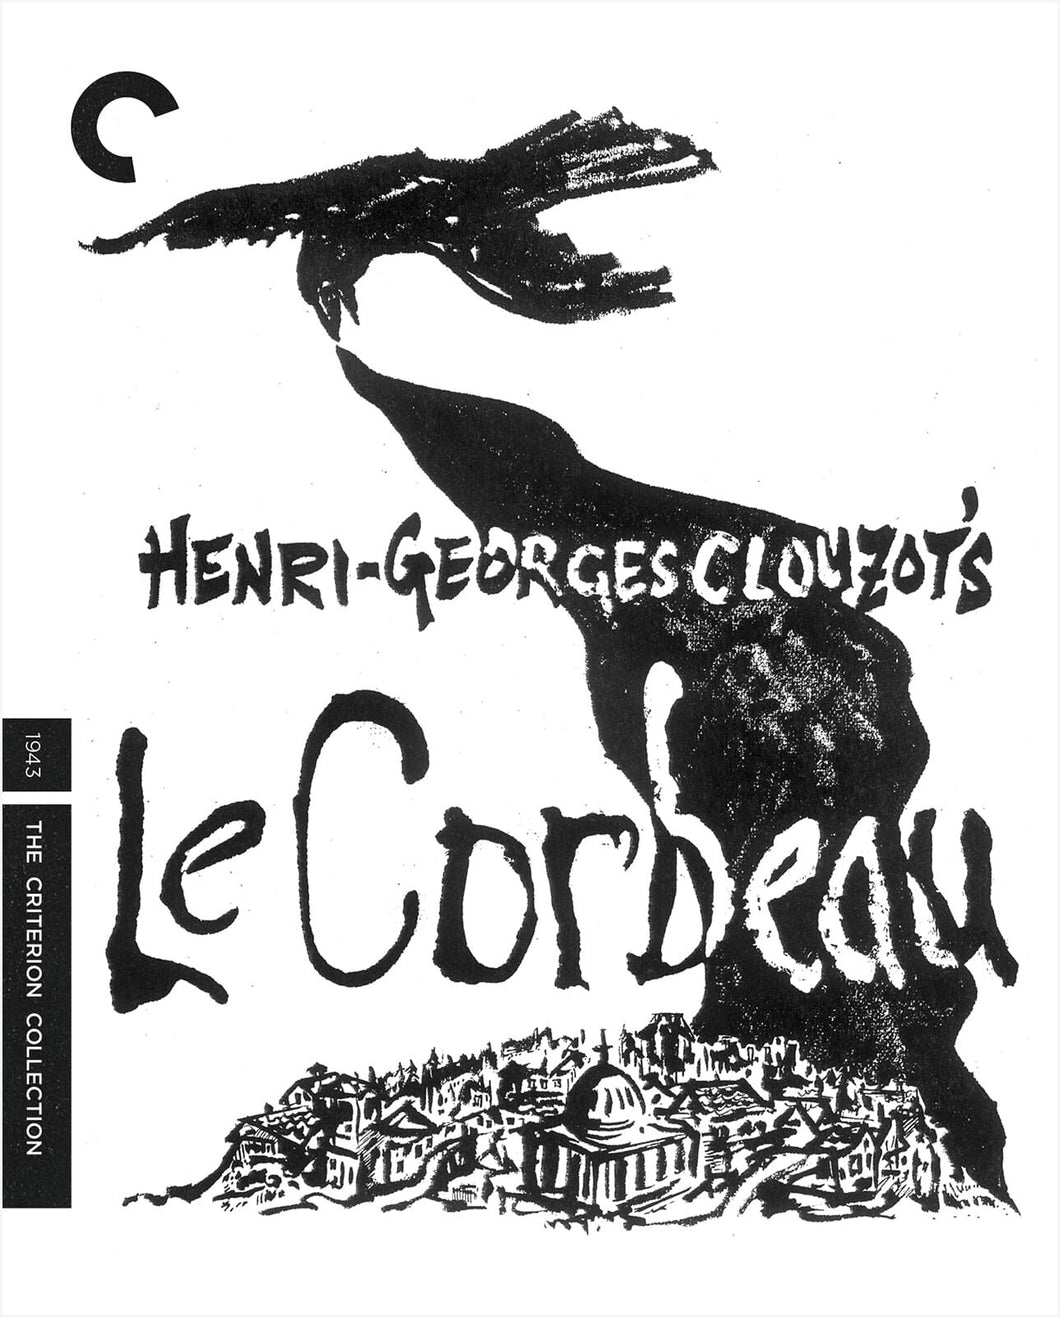 Le Corbeau (1943) de Henri-Georges Clouzot - front cover